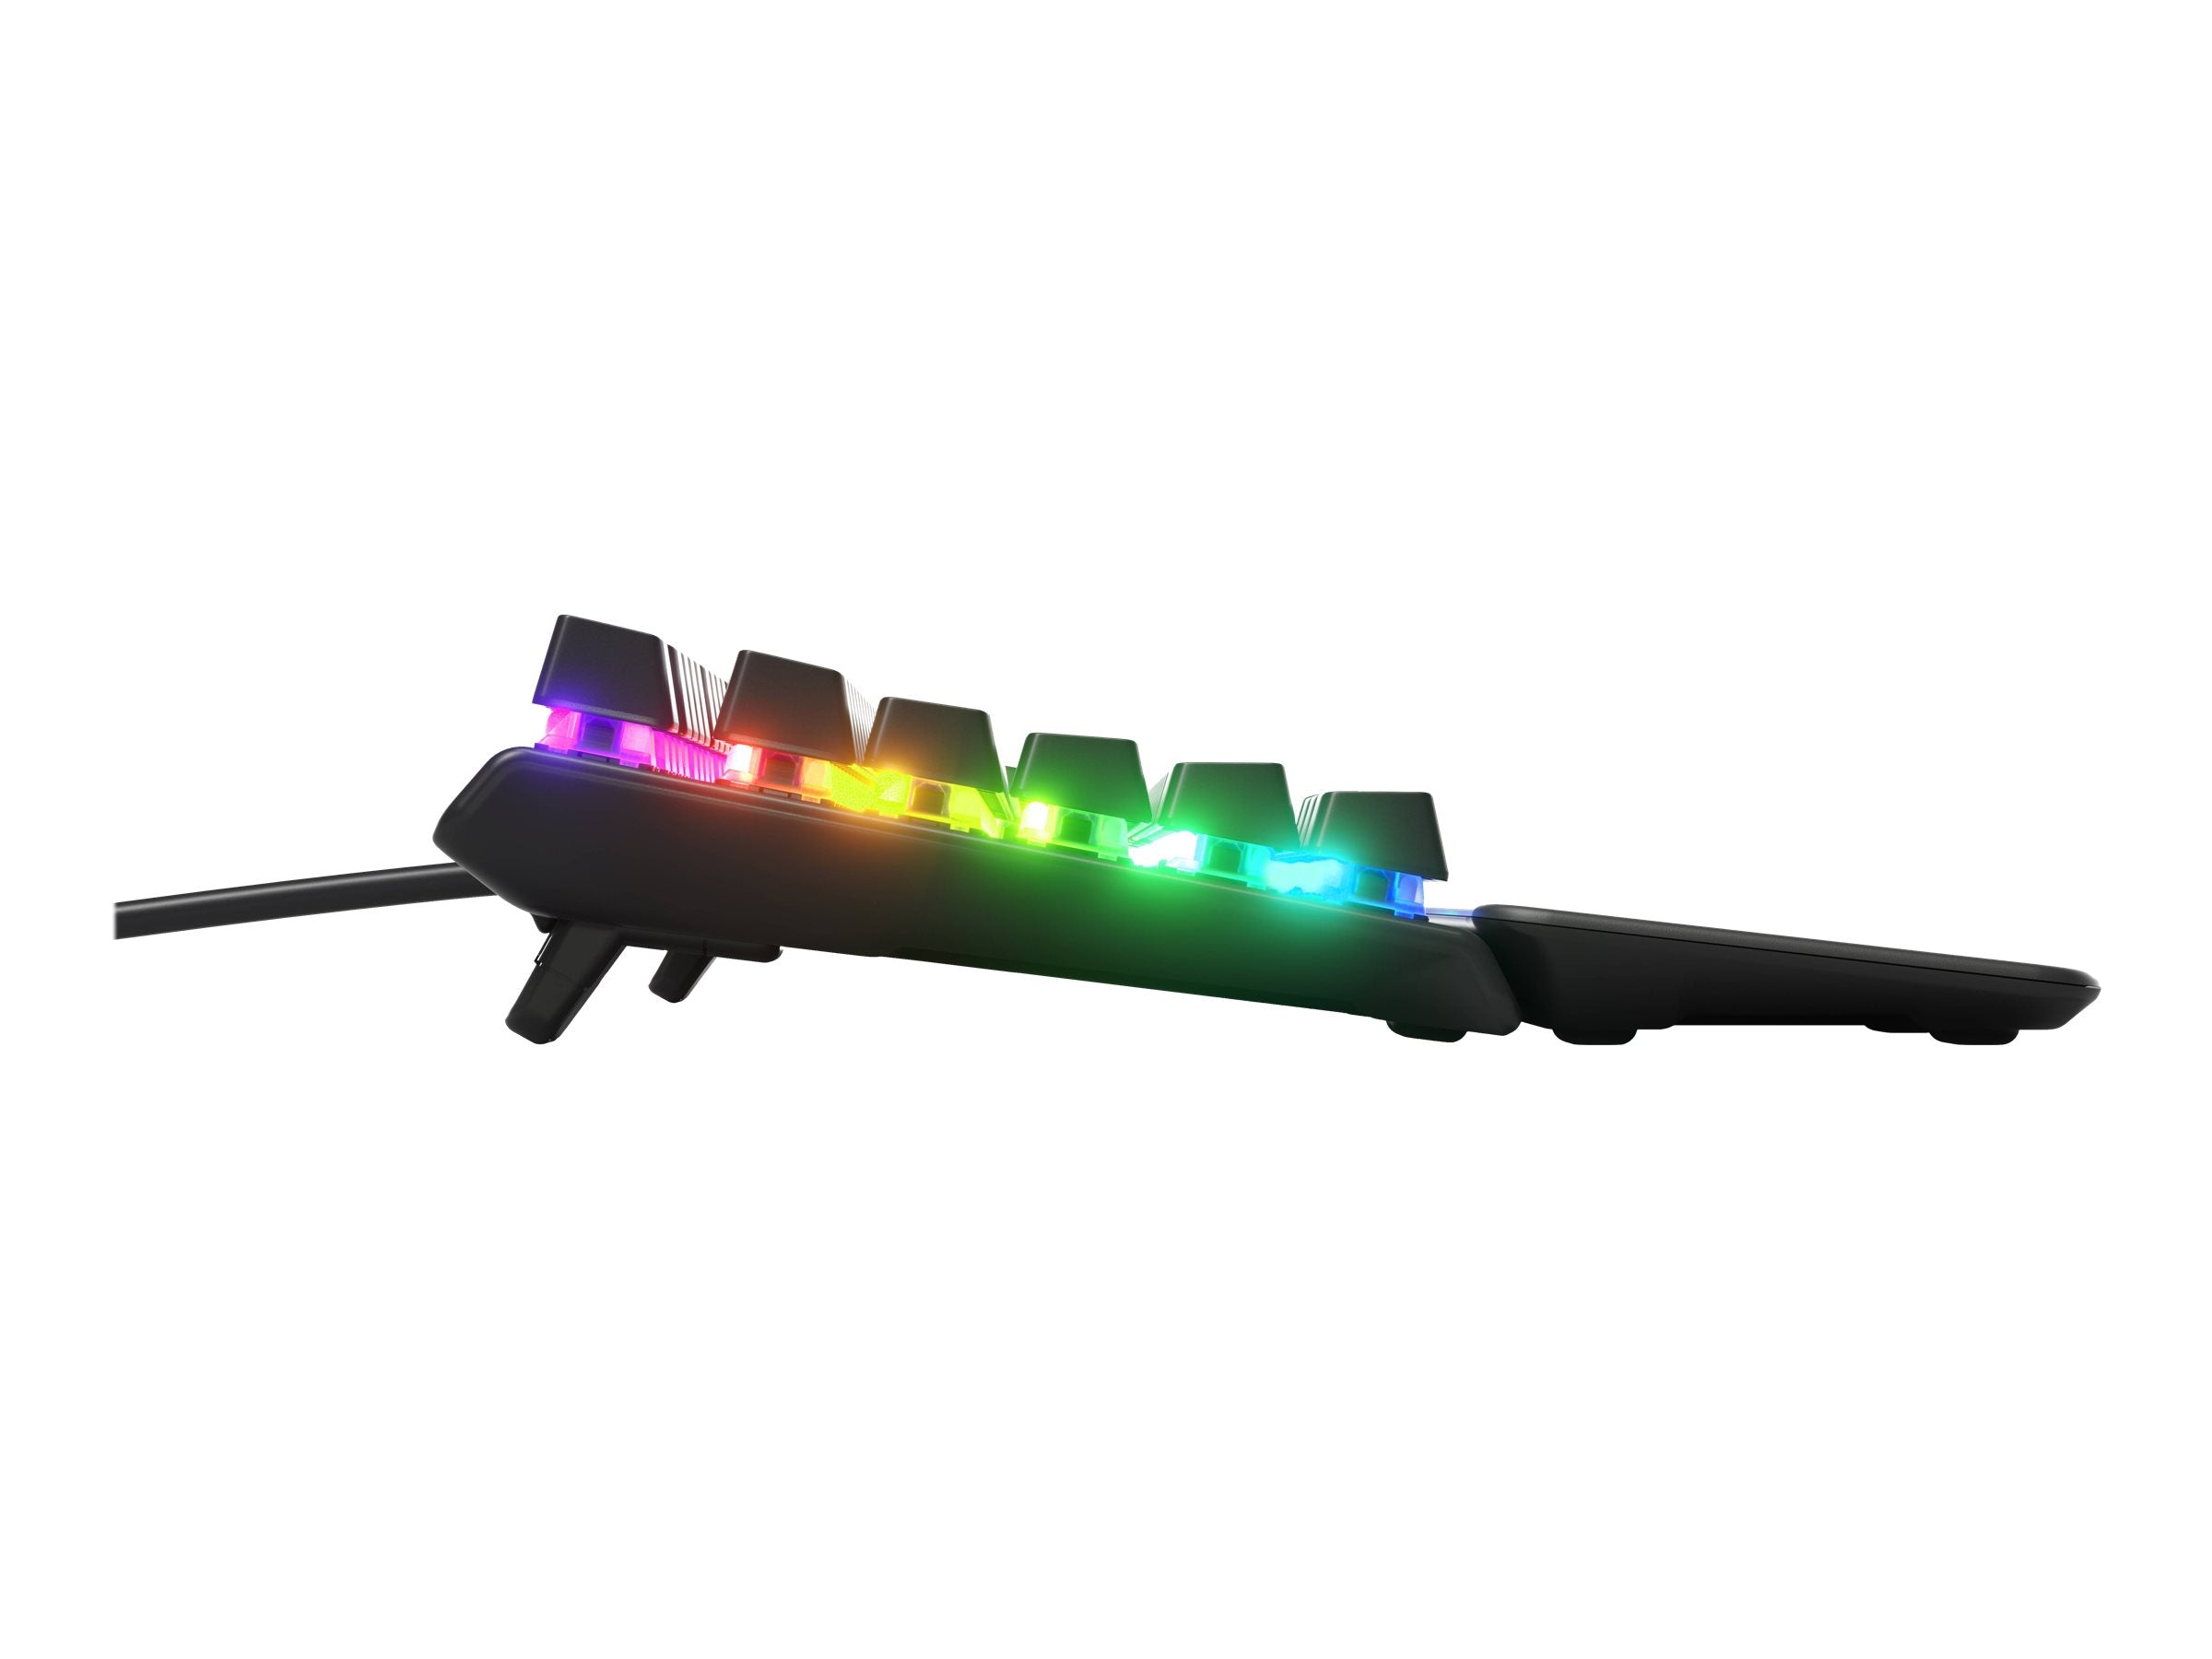 SteelSeries Apex Pro Keyboard Mekanisk RGB-kabel